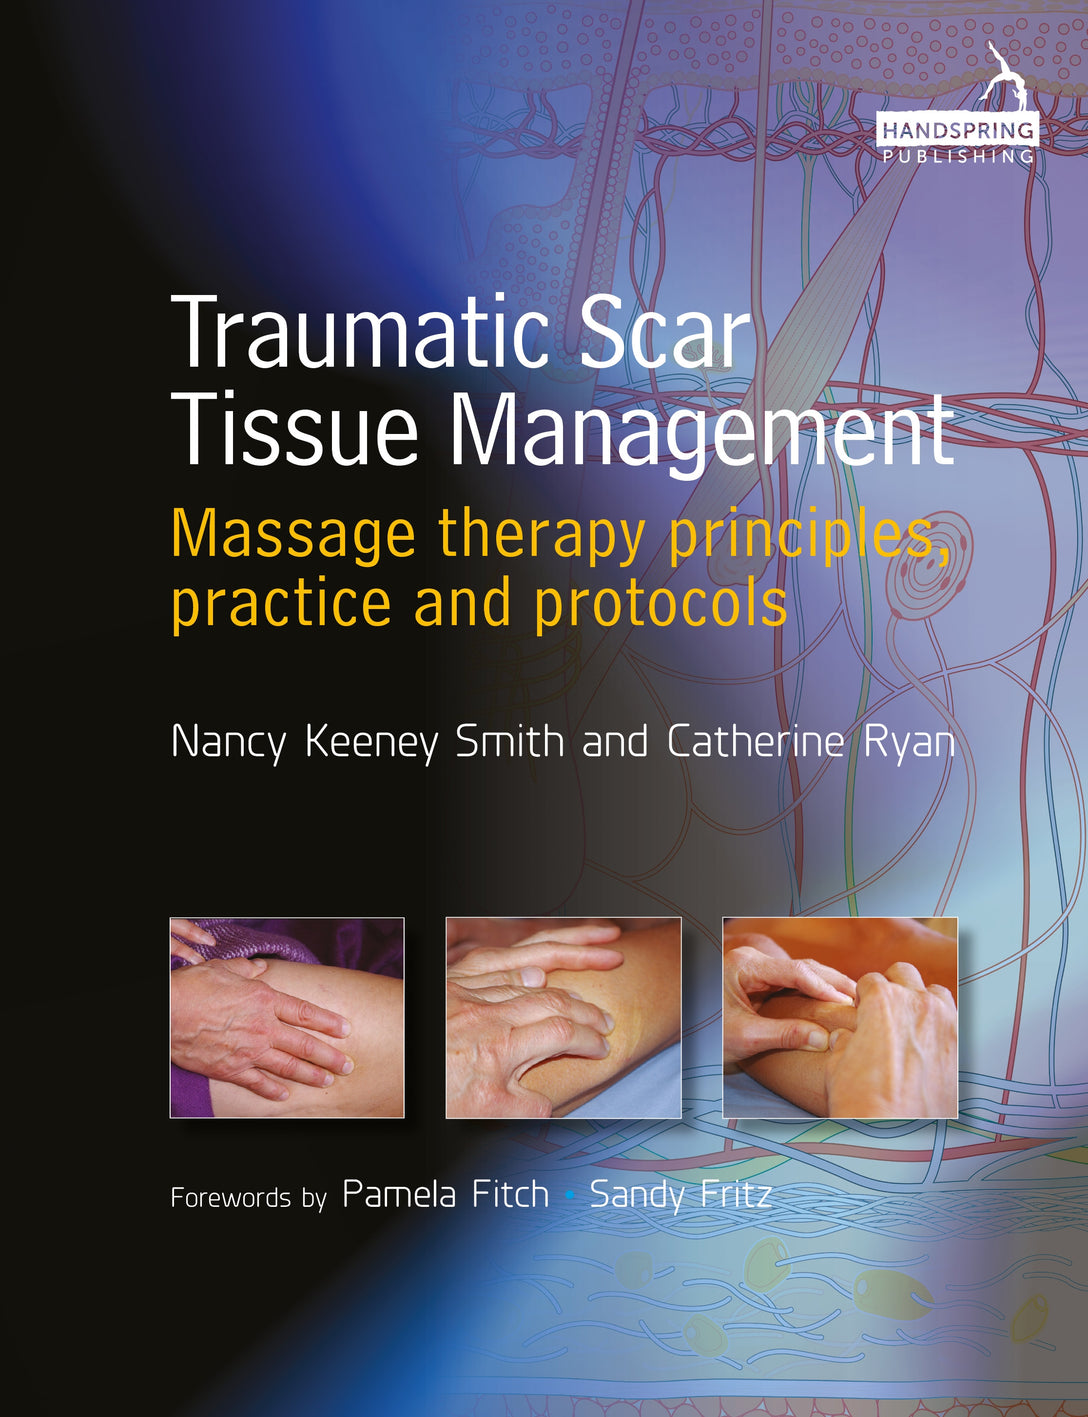 Traumatic Scar Tissue Management by Catherine Ryan, Nancy Keeney Smith